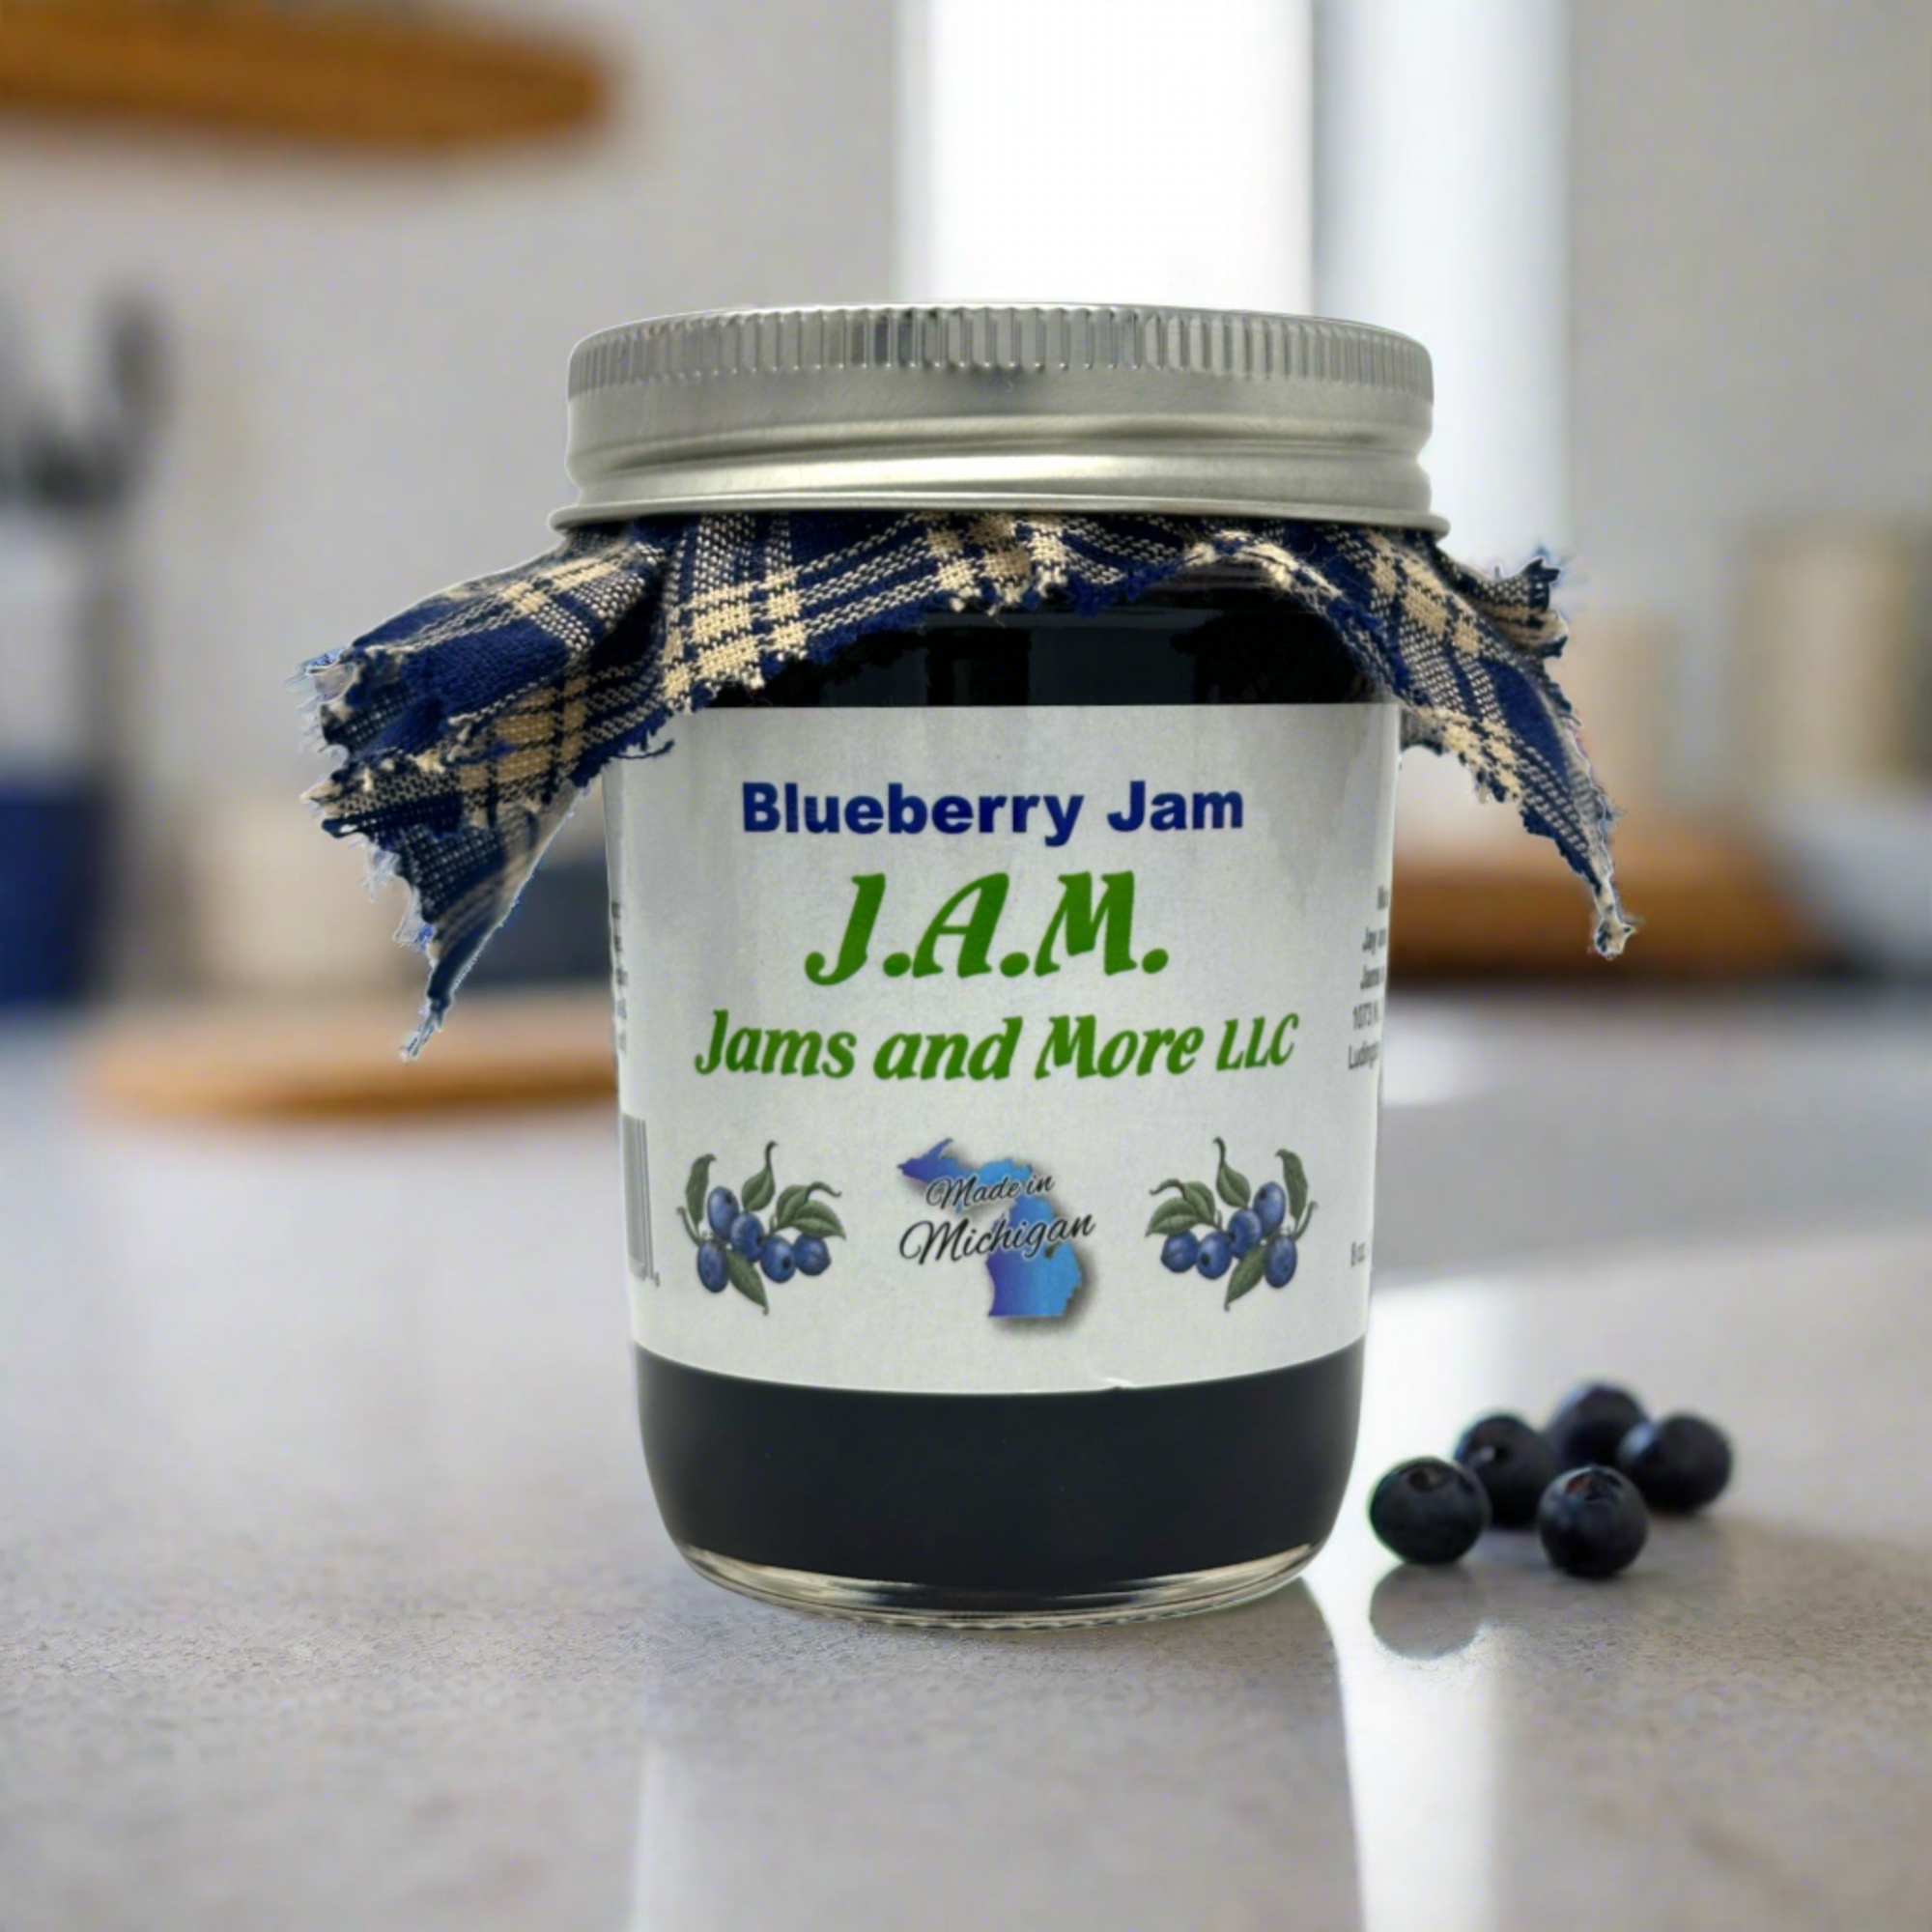 Blueberry Jam - The Roadside